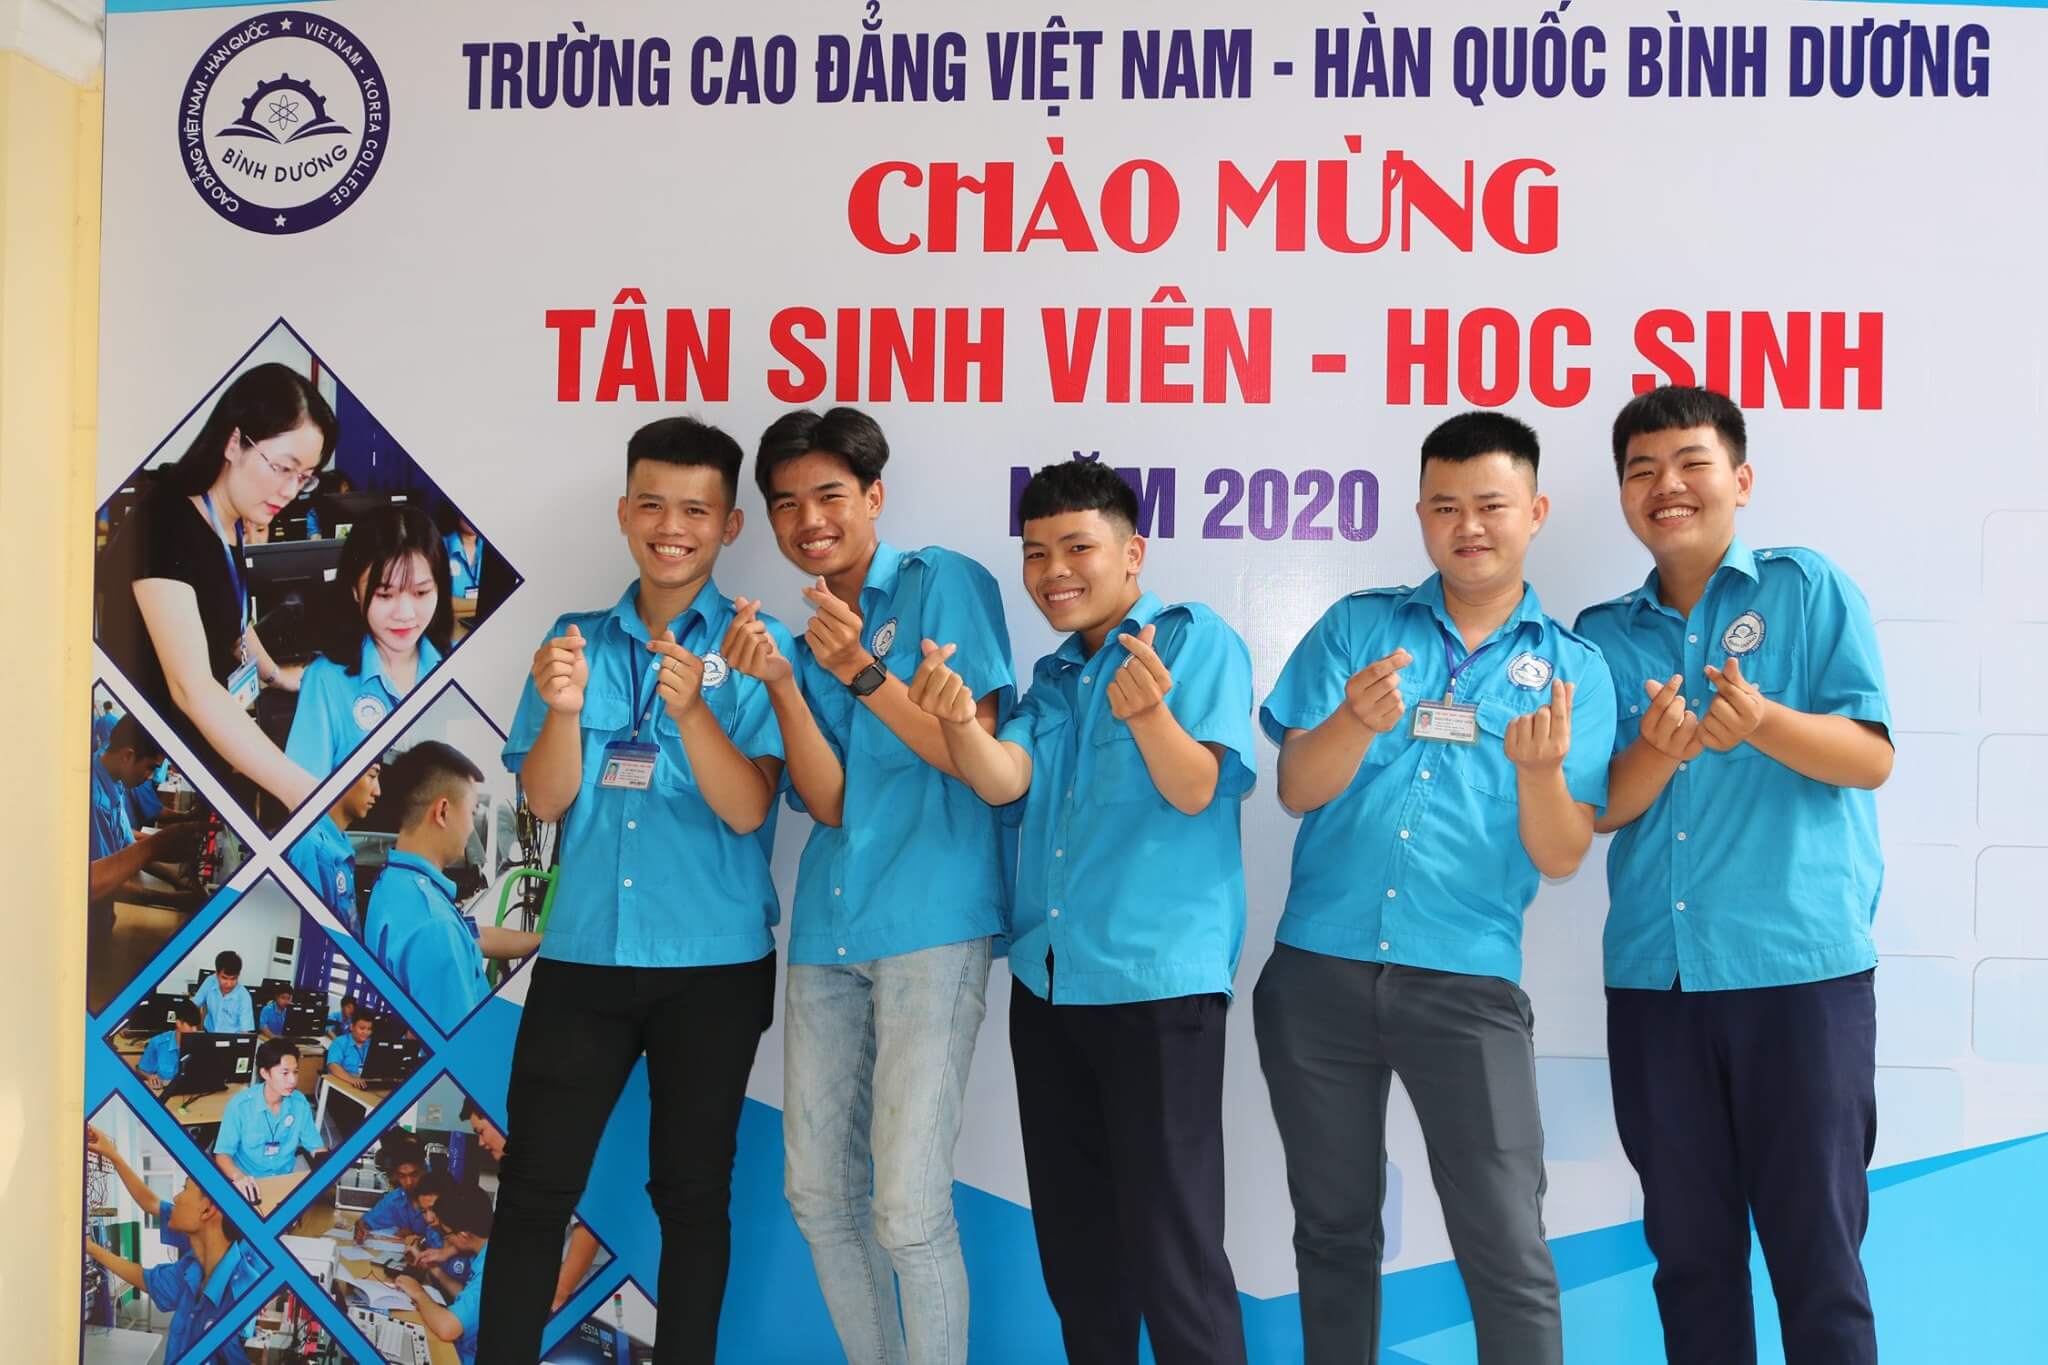 Review Trường Cao đẳng Việt Nam - Hàn Quốc Bình Dương năm 2021